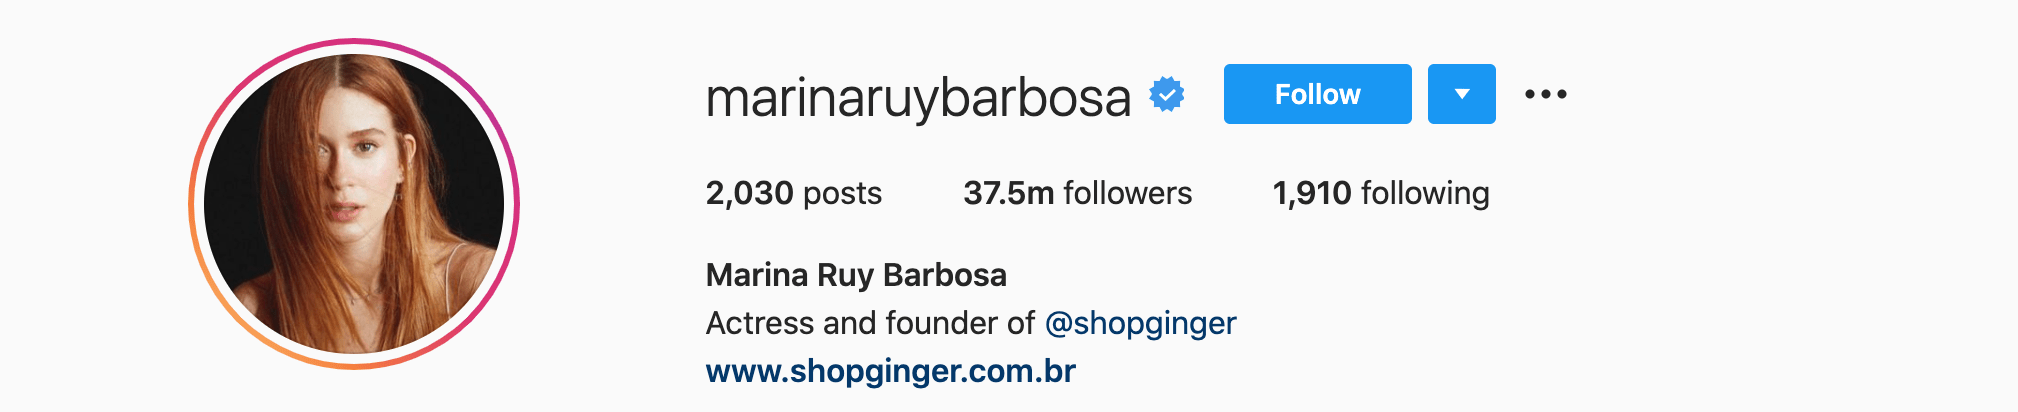 Top Instagram Influencers - MARINA RUY BARBOSA